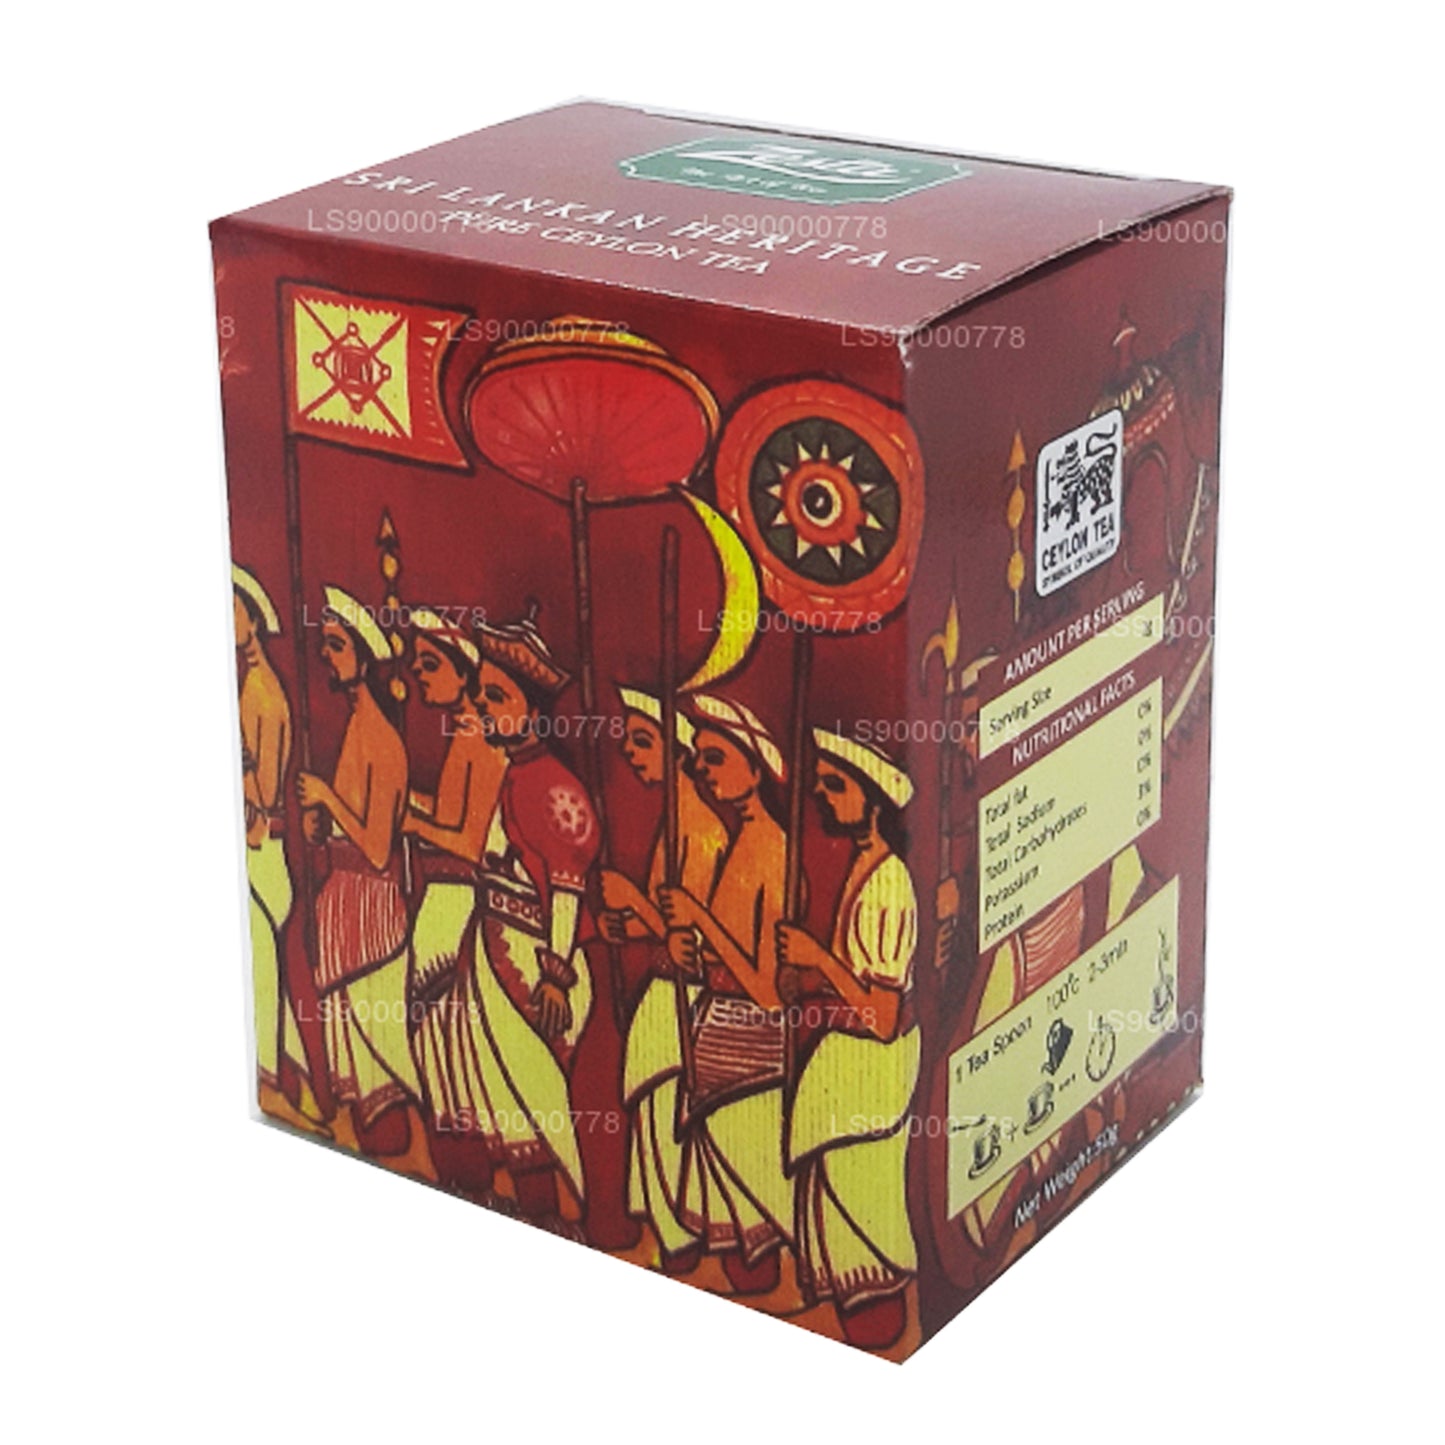 Чистый цейлонский чай Zesta «Наследие Шри-Ланки» Kenilworth PEKOE 1 (100 г)